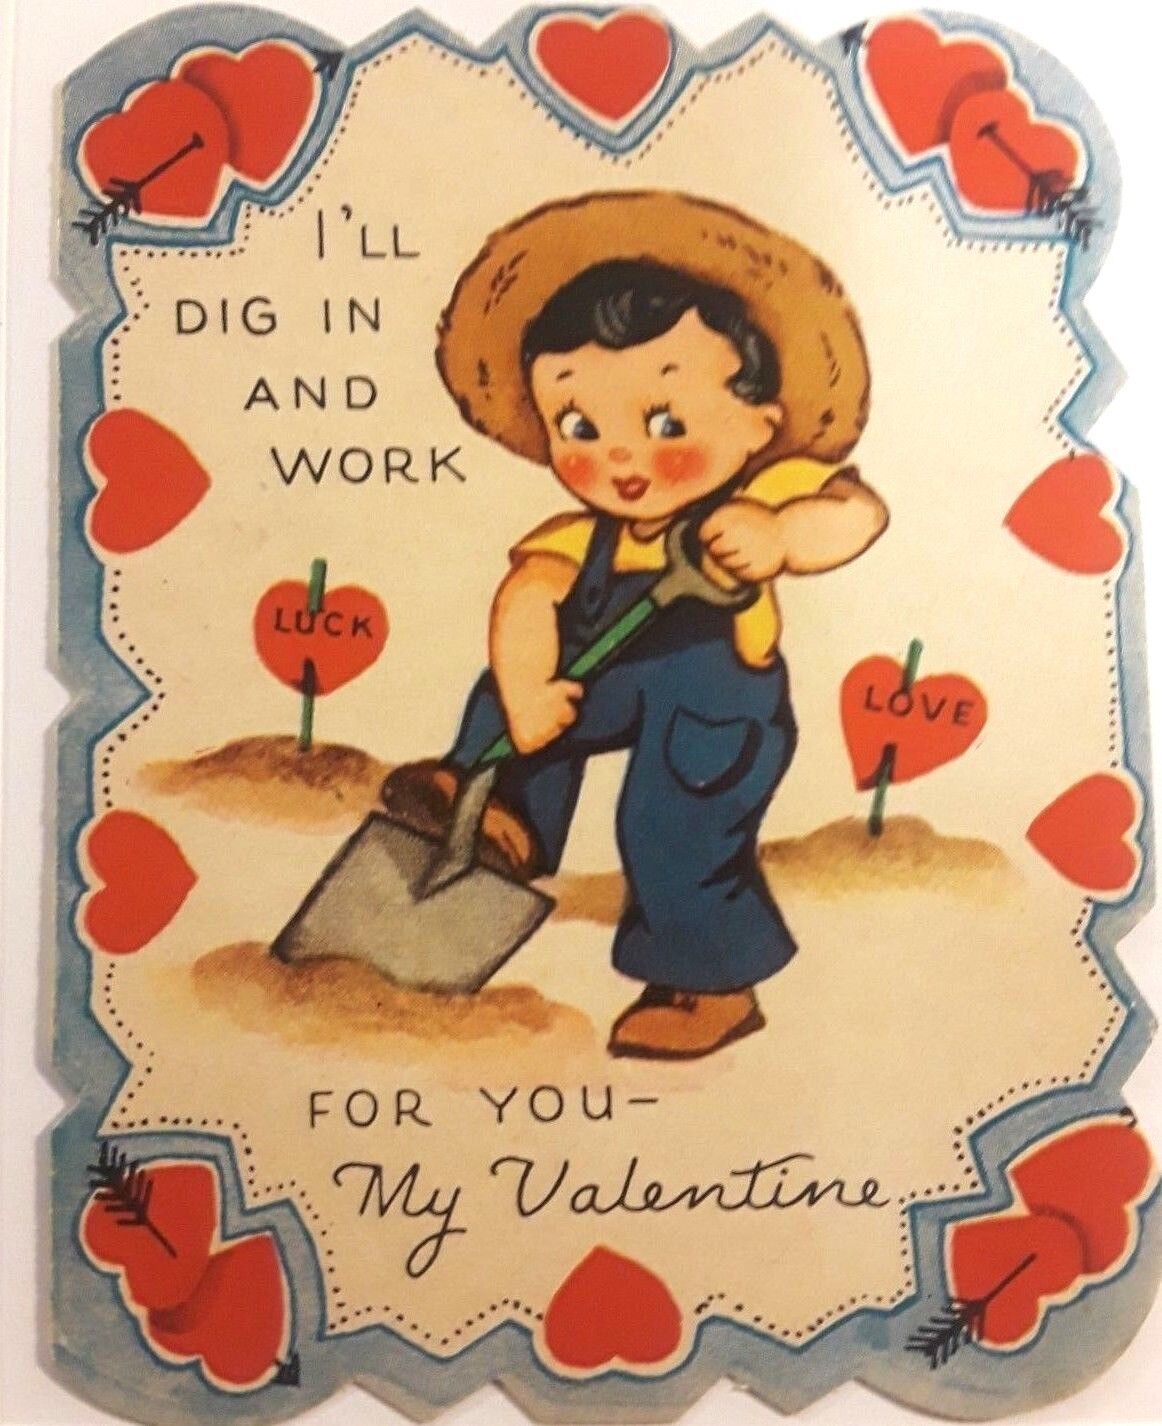 Vintage Valentine's Day Card - Cute Boy Digging in Garden Love